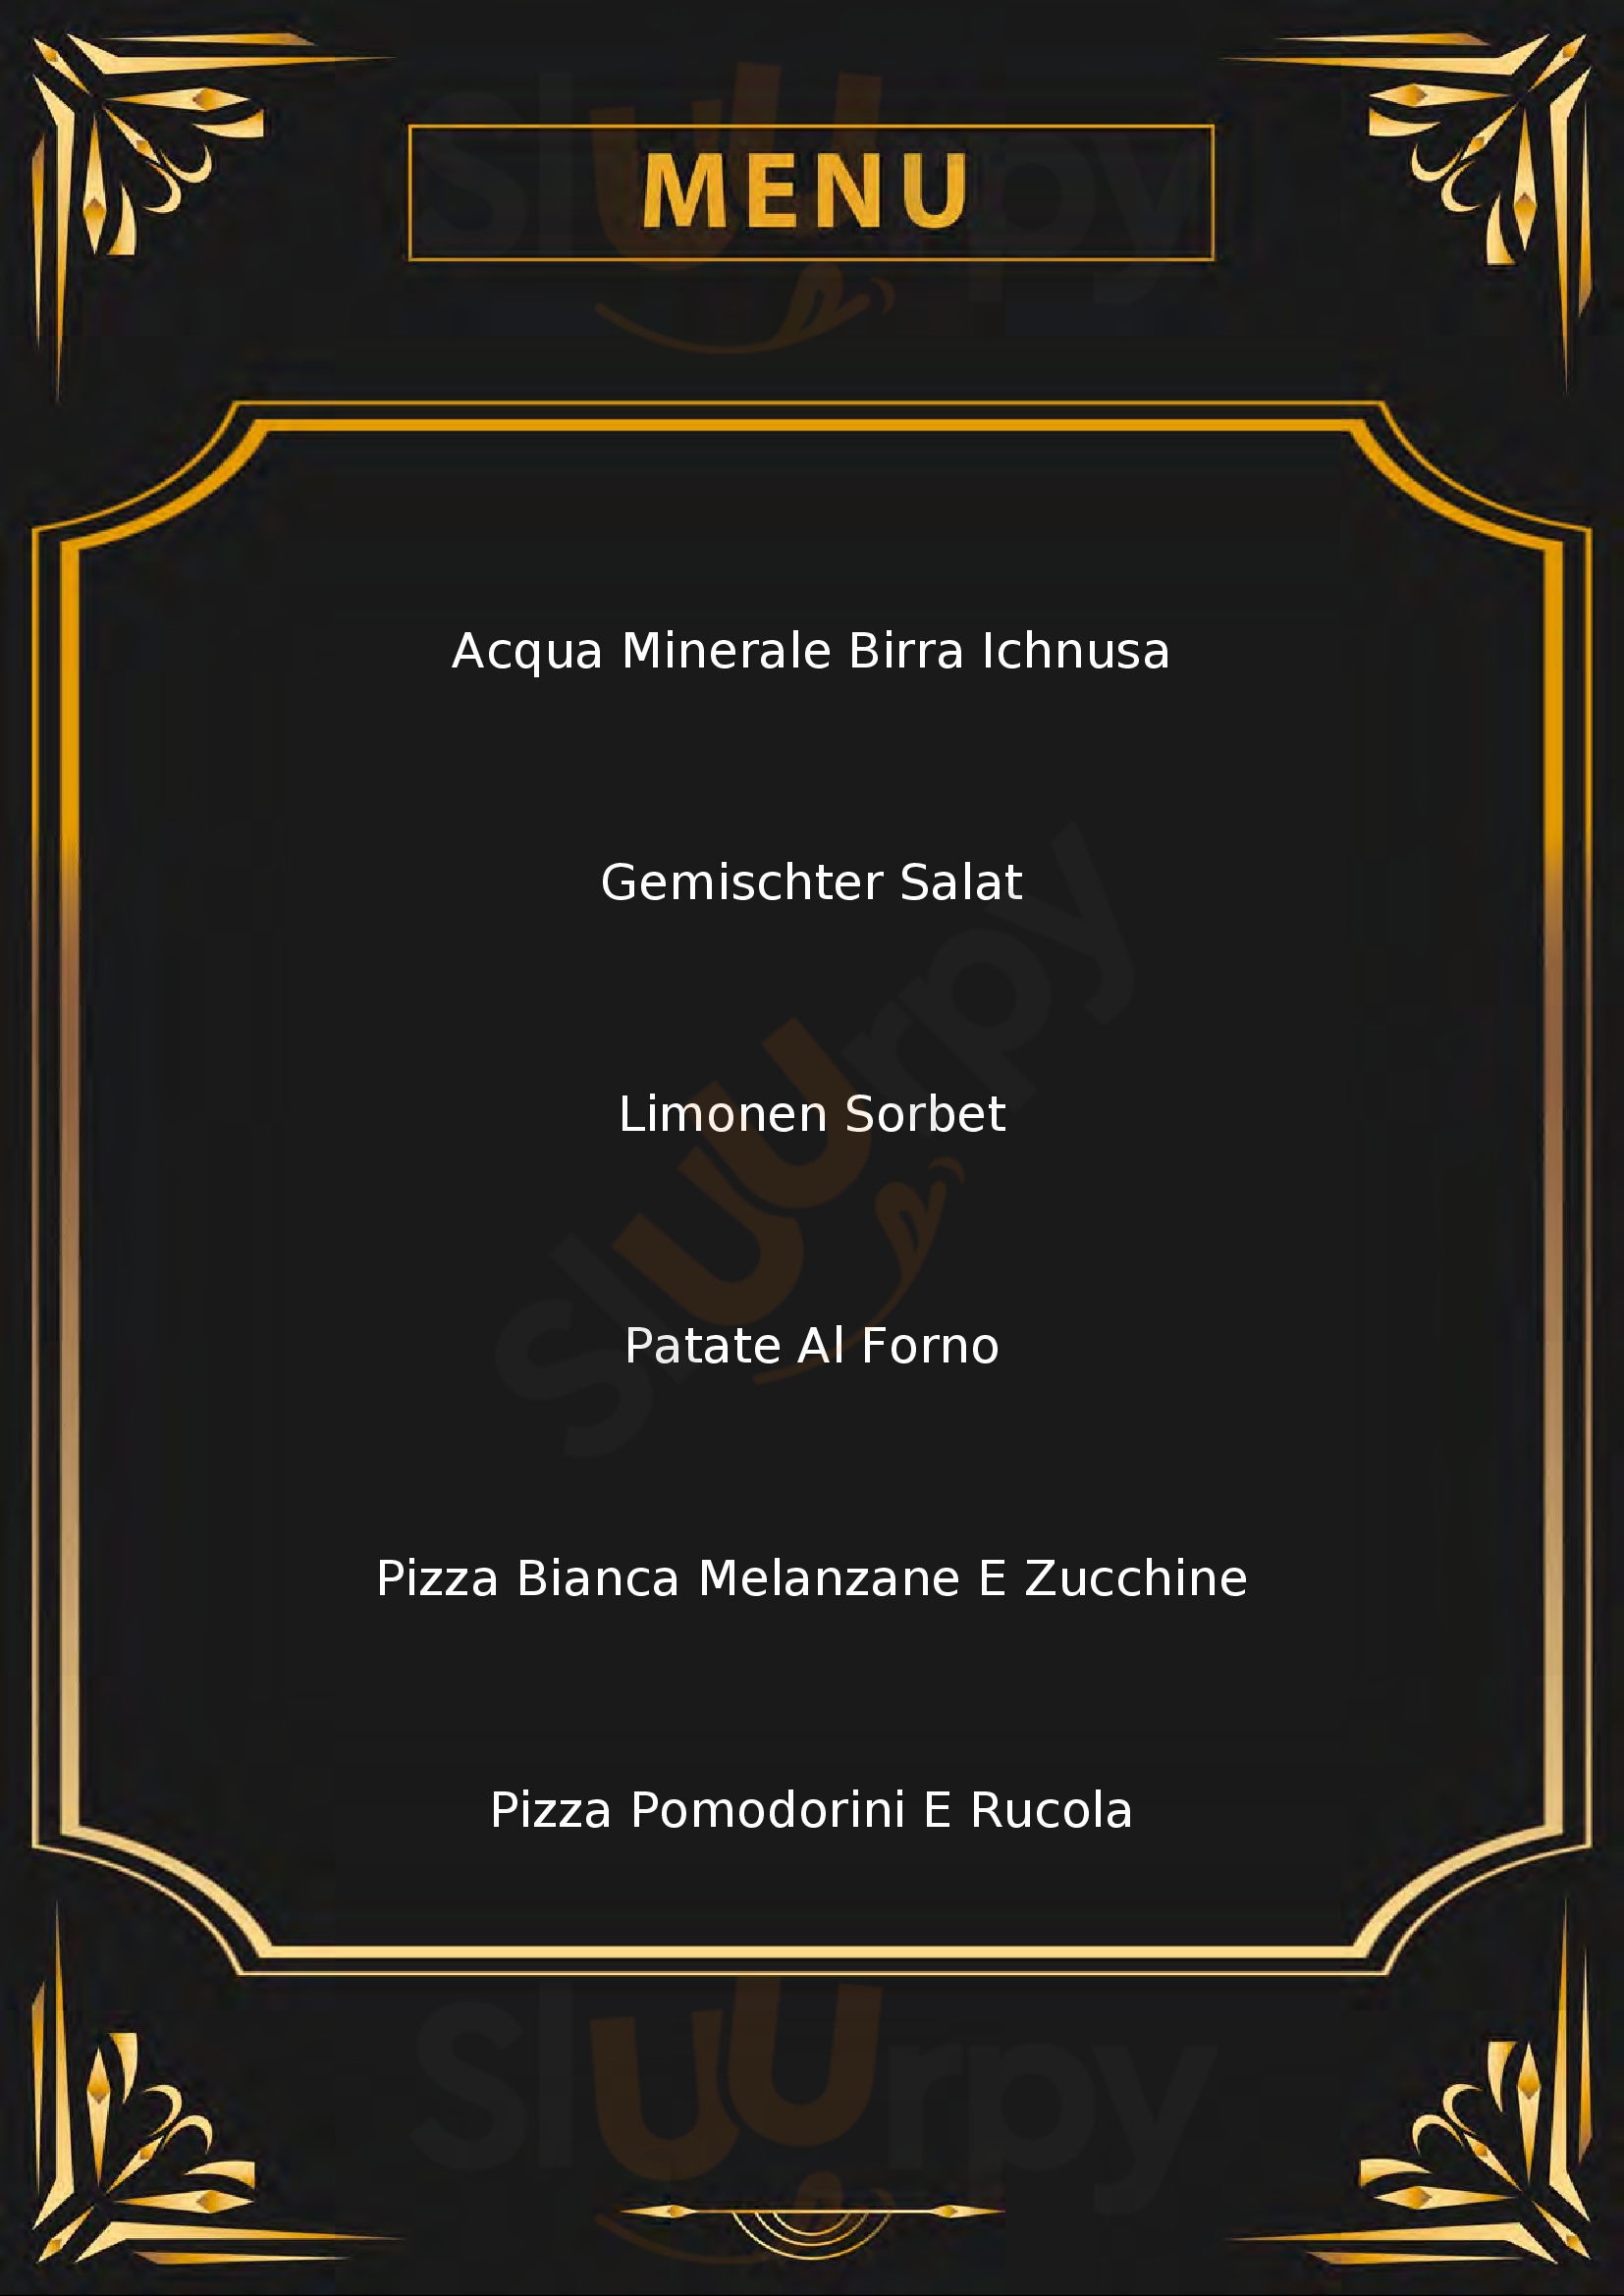 Ristorante pizzeria Punto di Ristoro San Salvatore 2016 Tortolì menù 1 pagina